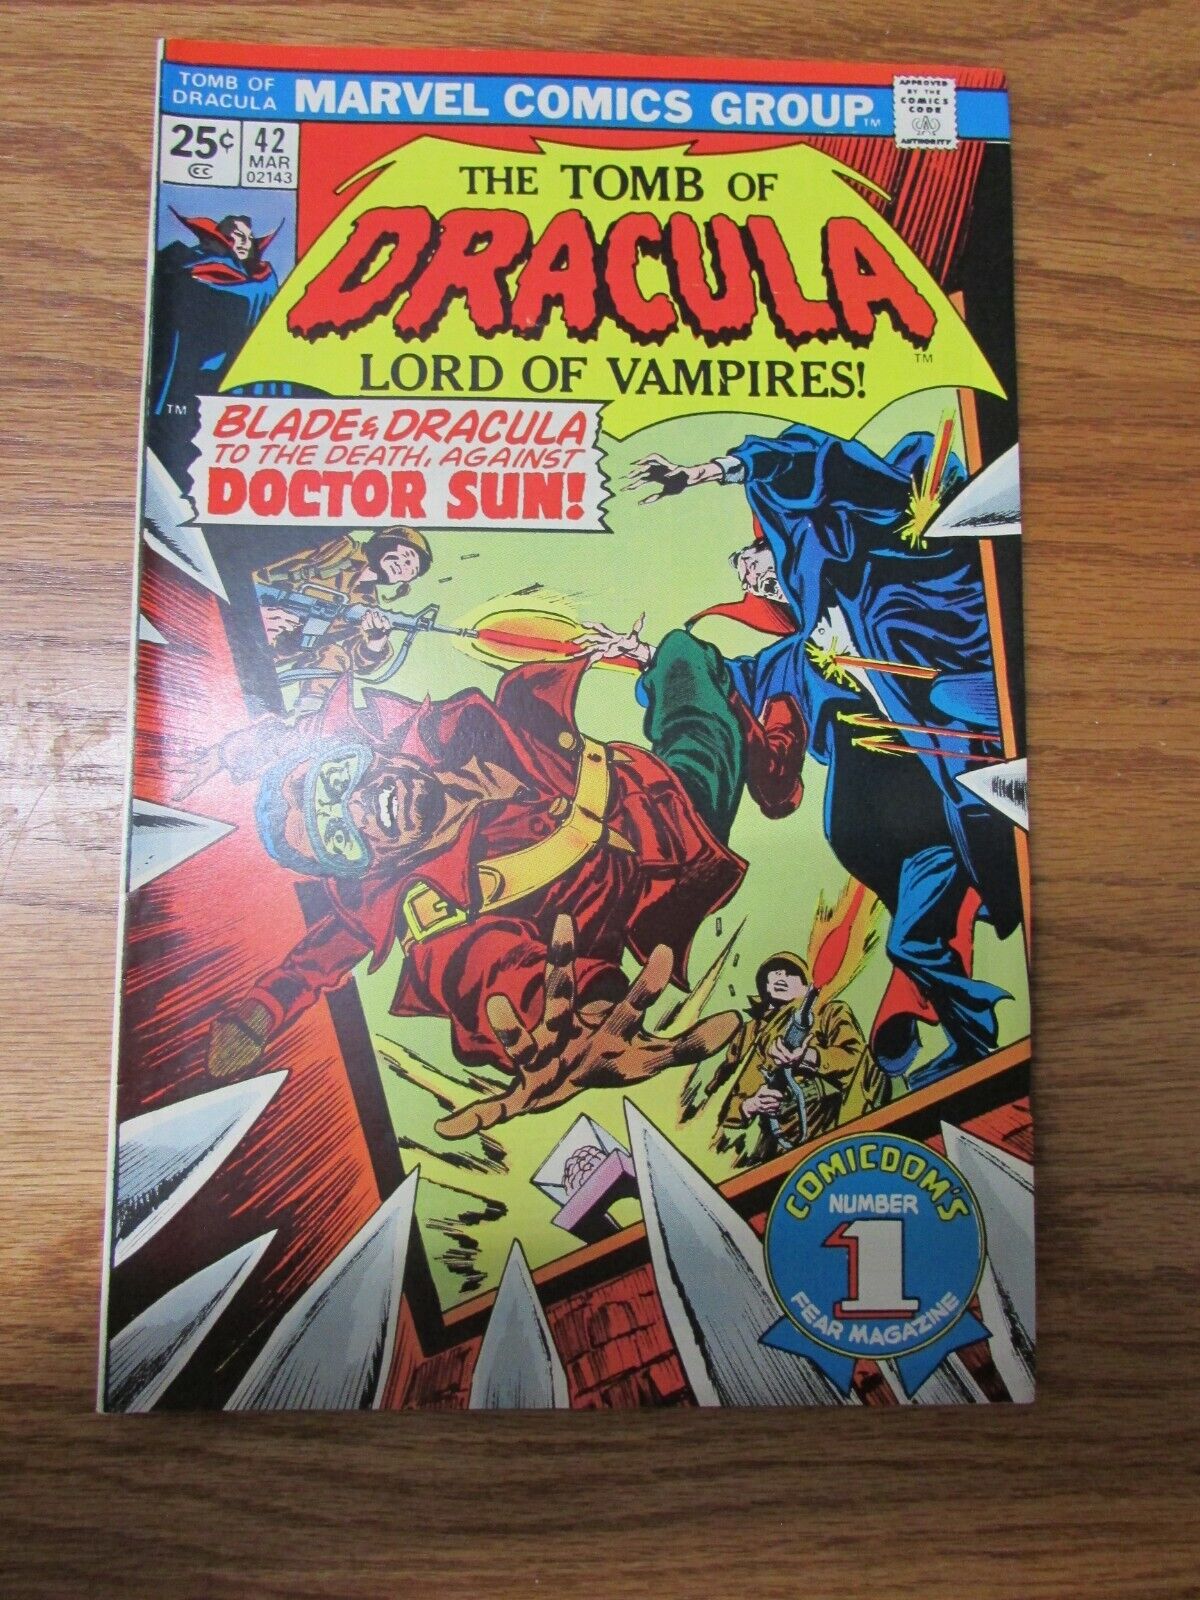 Vintage Marvel Comics The Tomb of Dracula Vol. 1 No. 42 March 1975 Comic Book